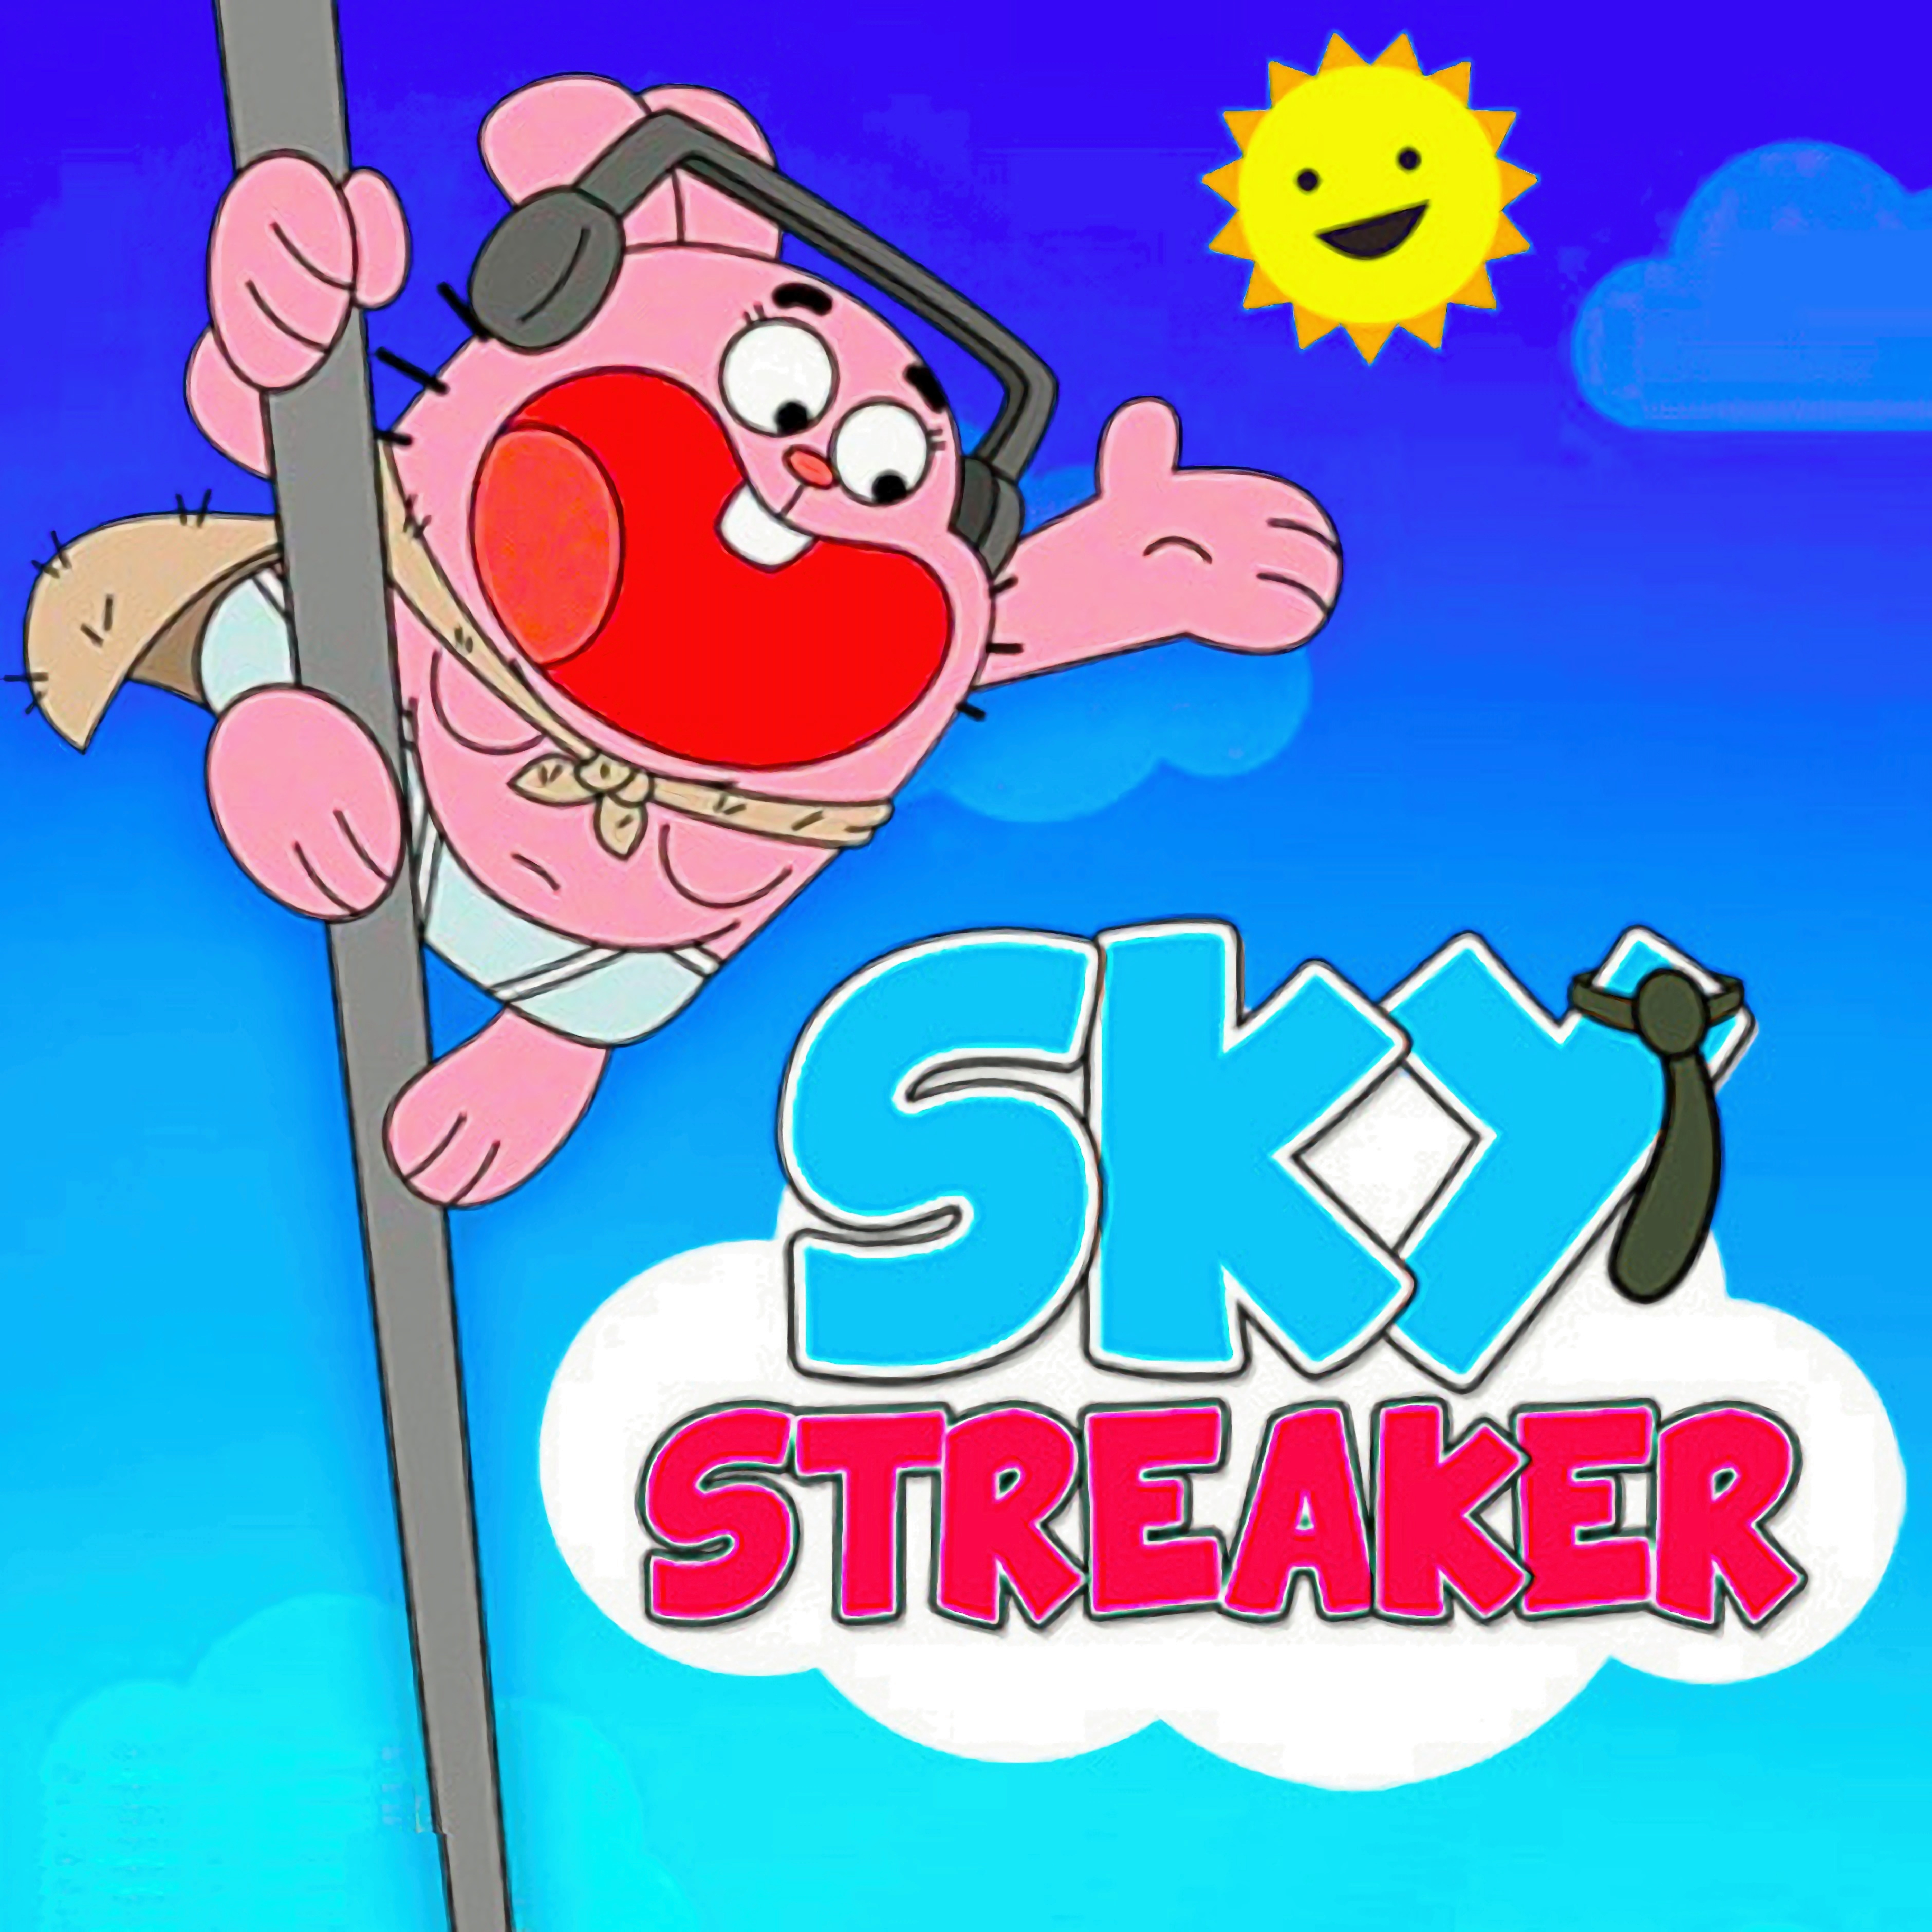 Sky Streaker - Gumball